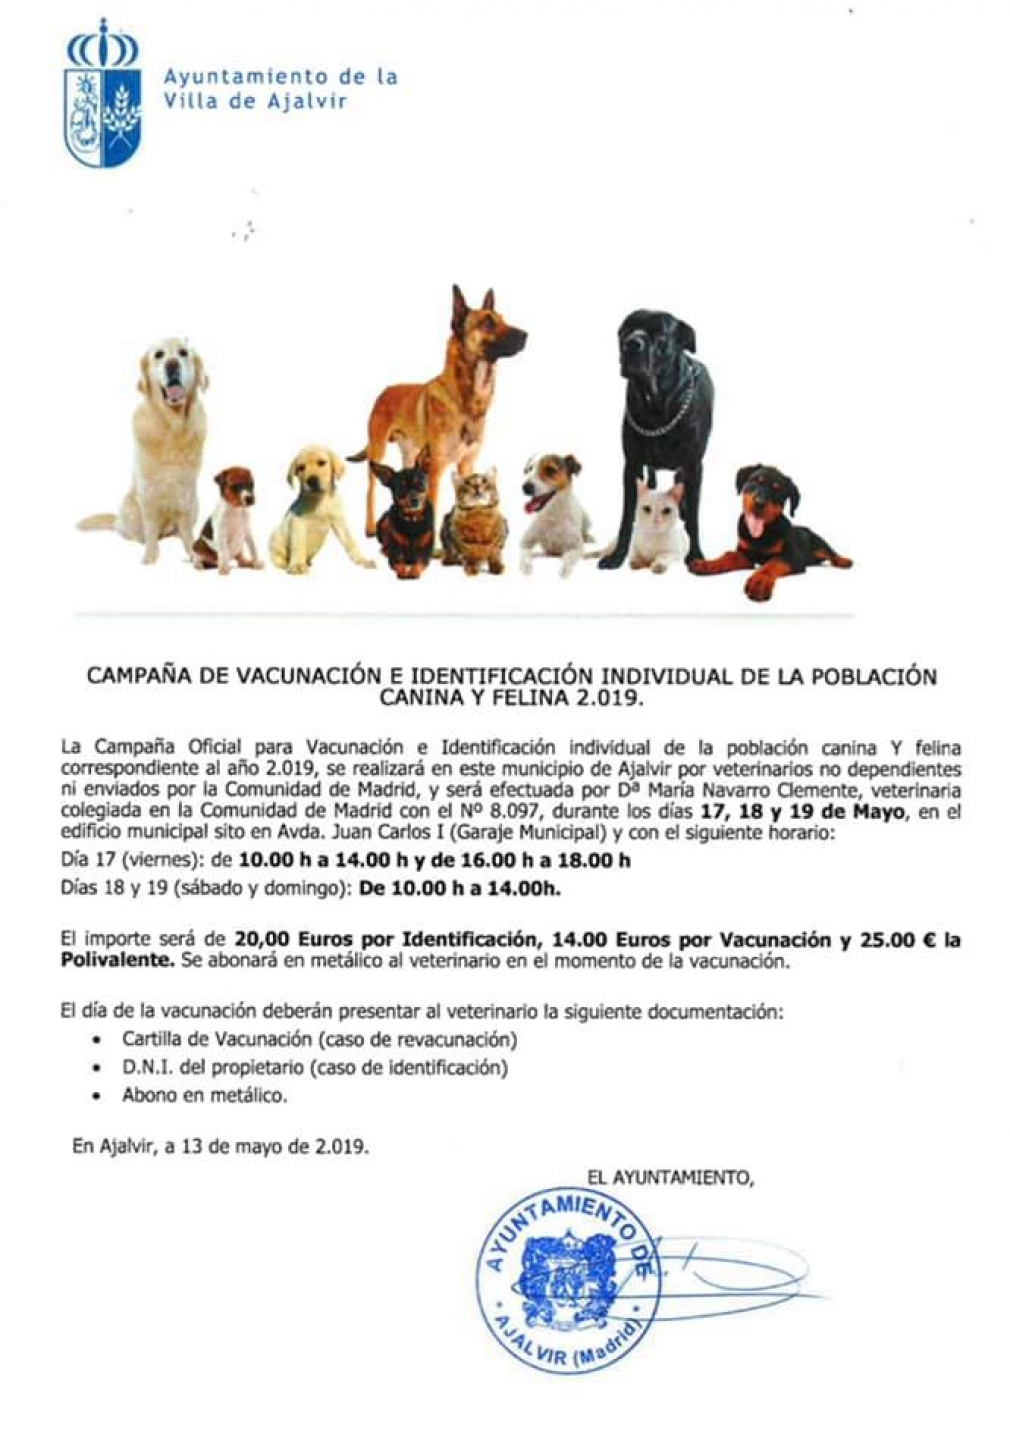 Campaña de Vacunación canina y felina 2019. 17, 18 y 19 de Mayo